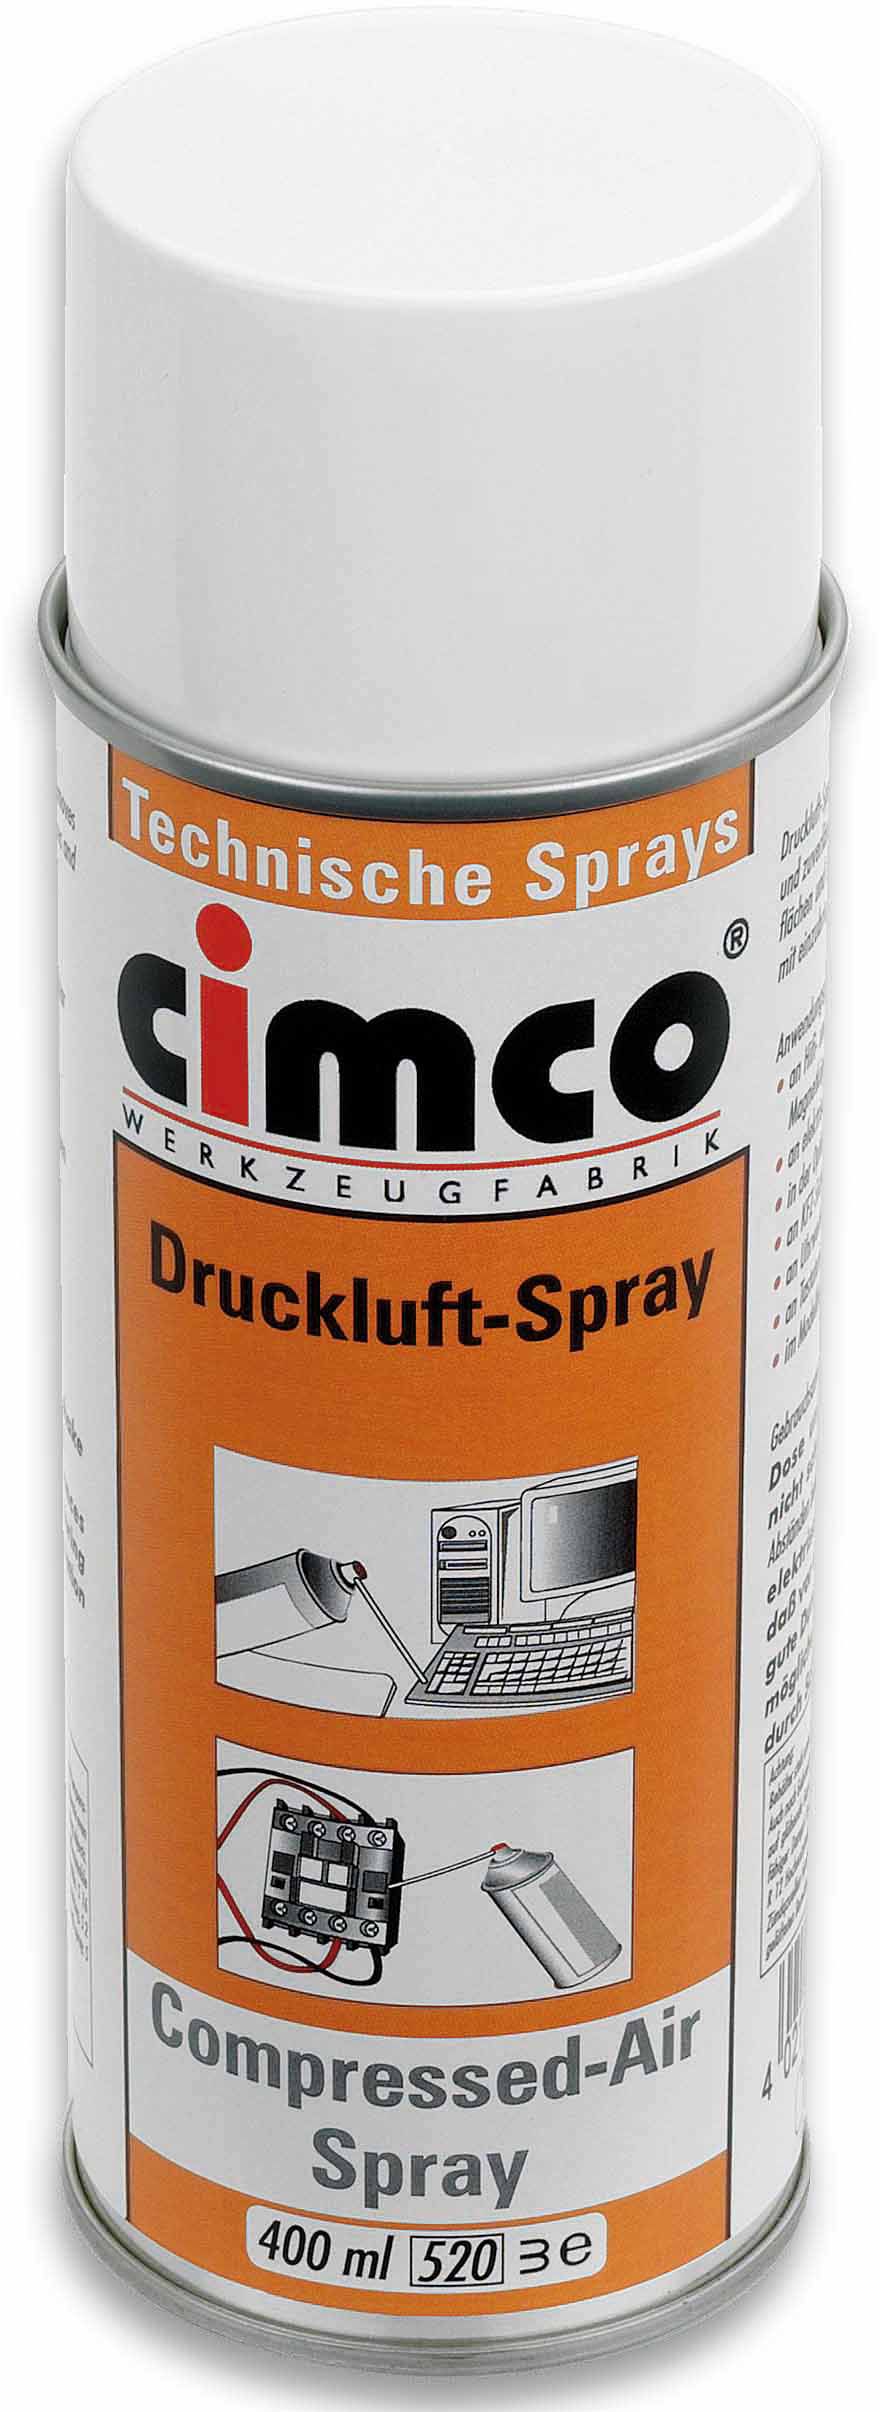 Druckluft-Spray 400ml